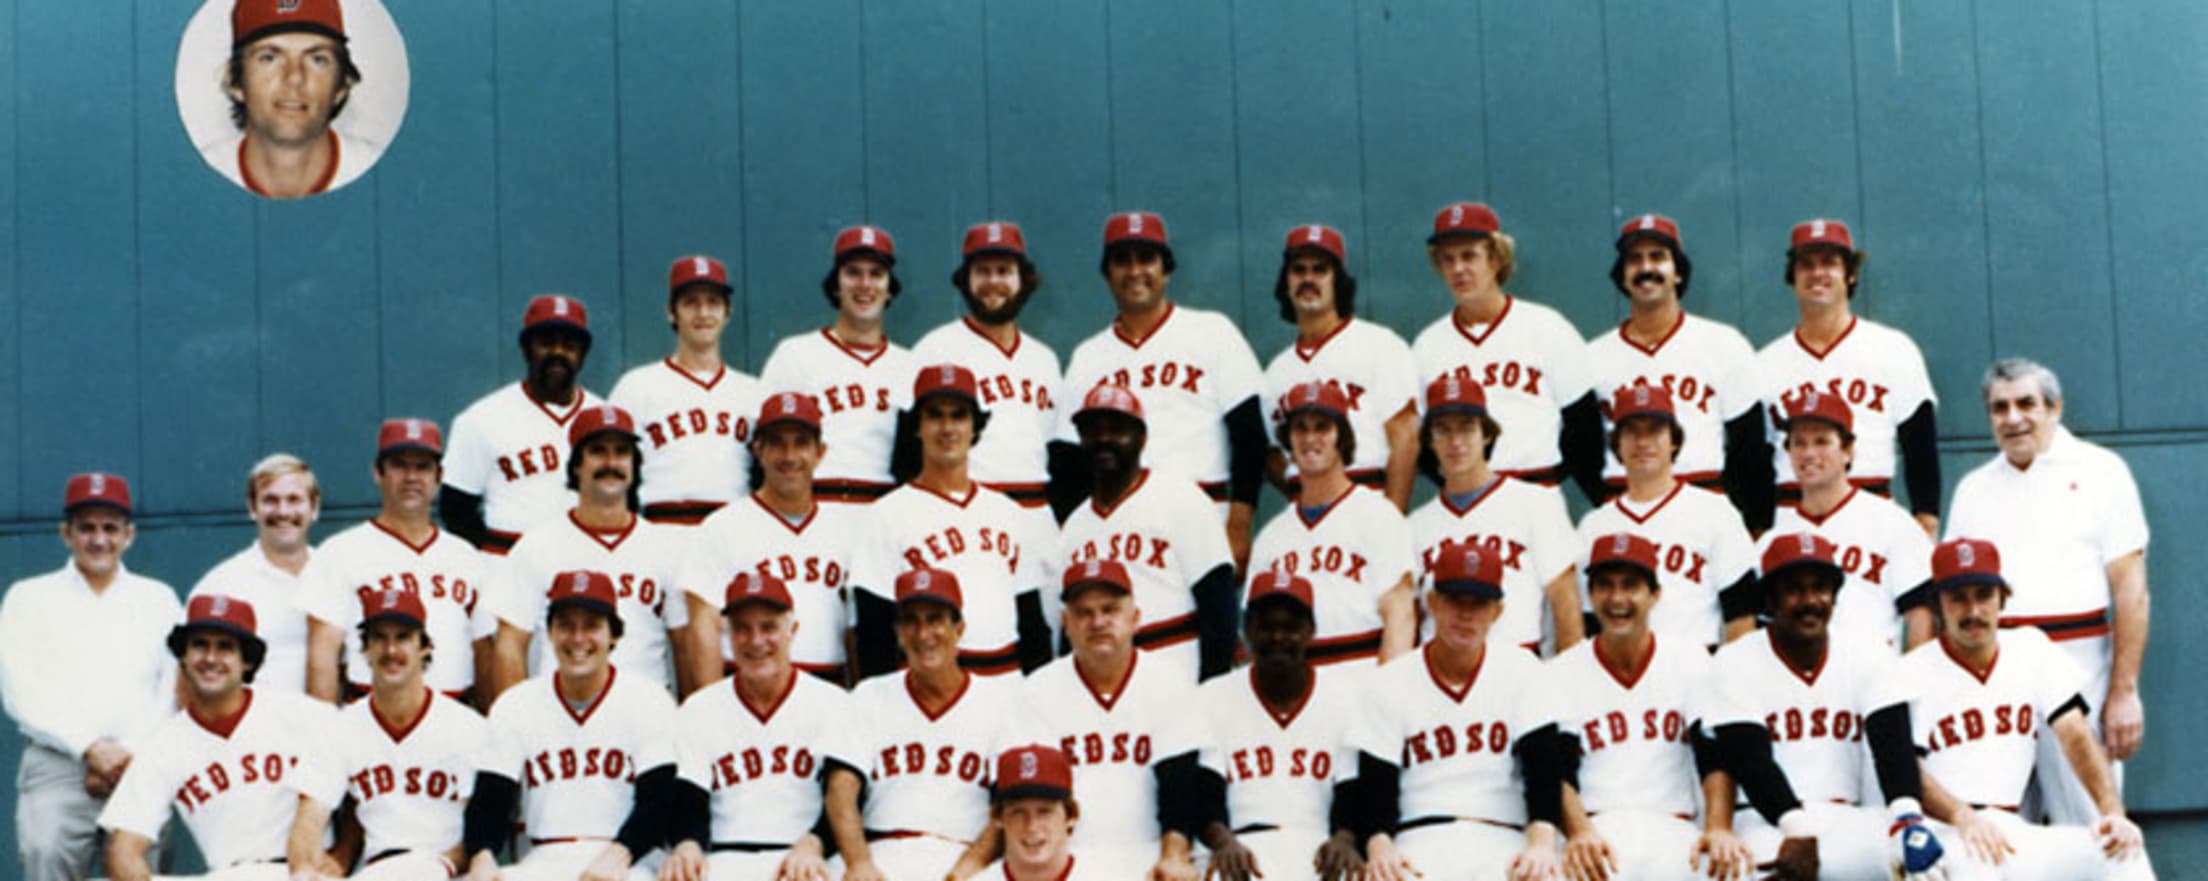 1975 Boston Red Sox Program Tony Conigliaro Photo Ex Second